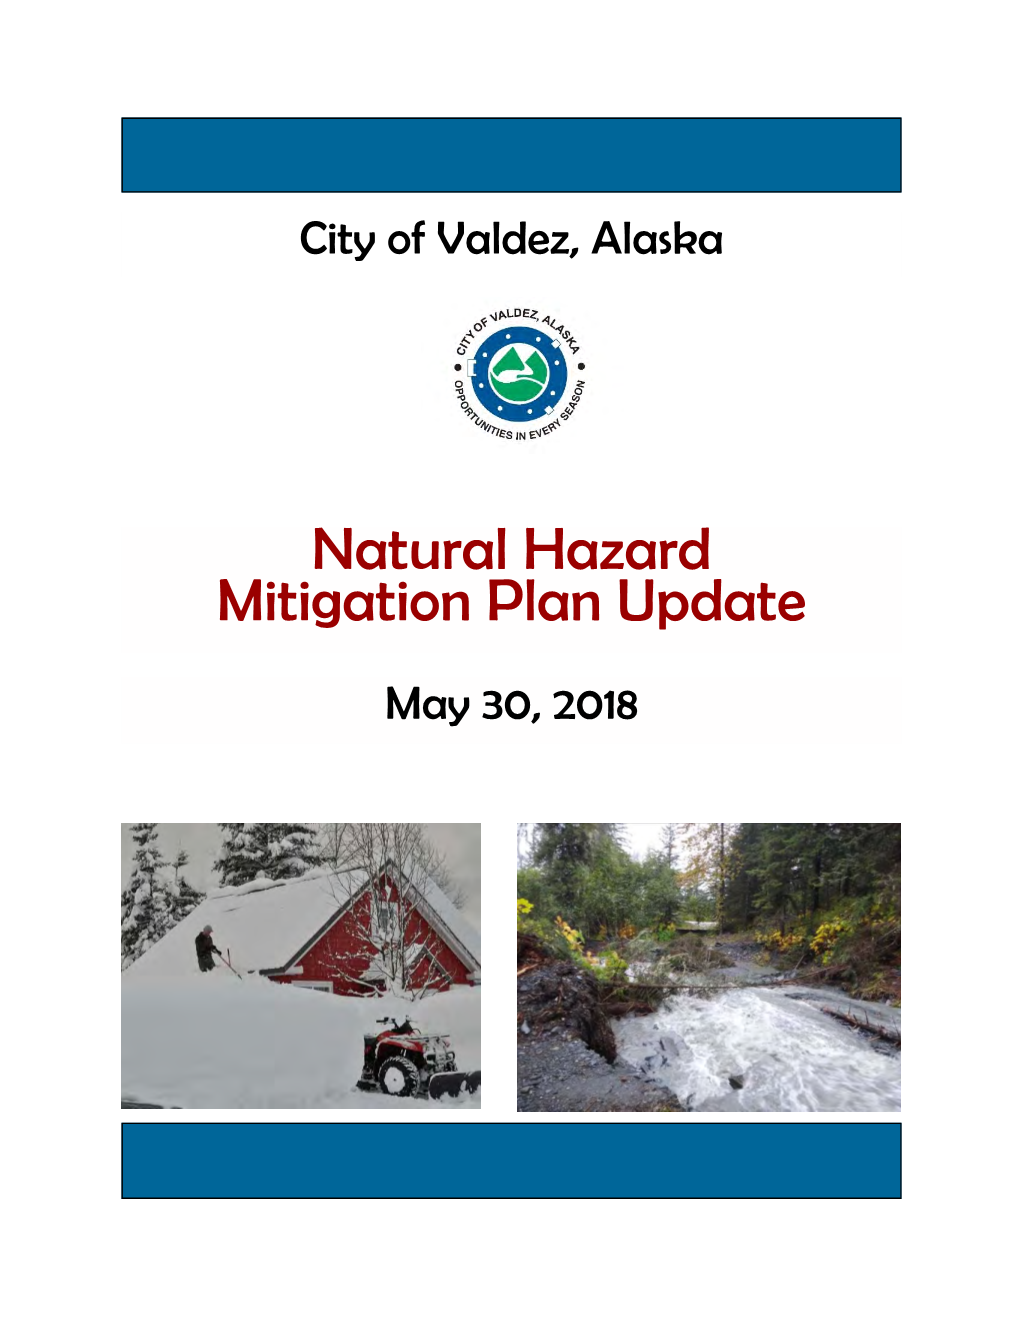 Natural Hazard Mitigation Plan Update